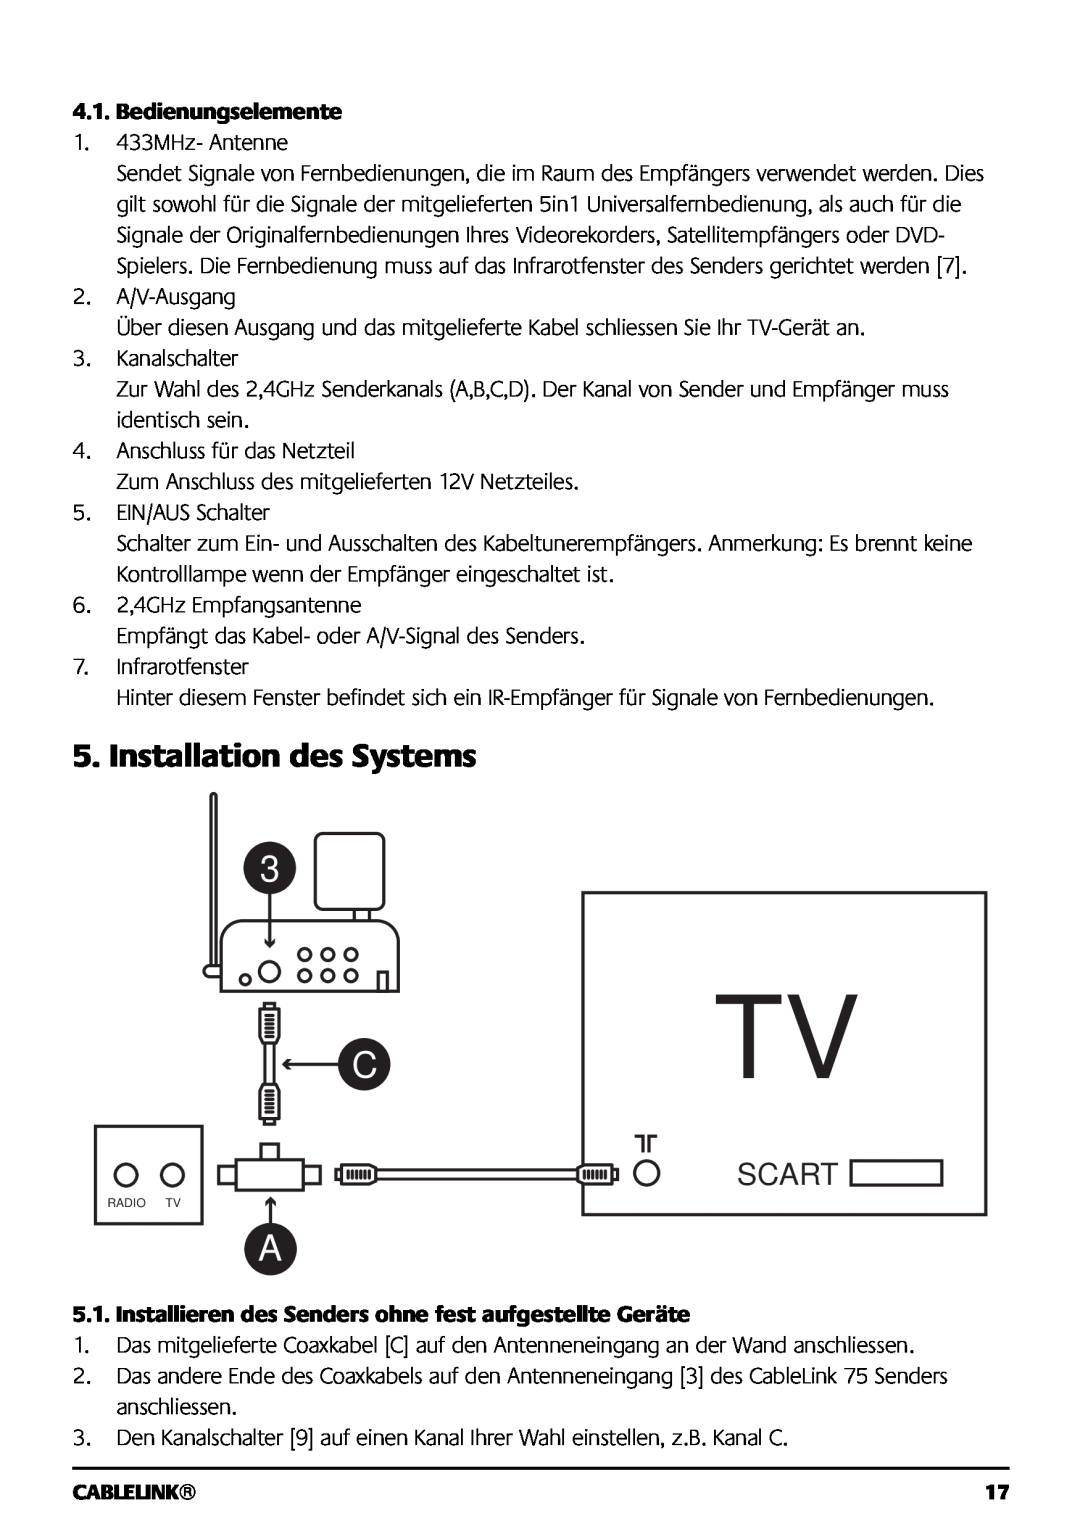 Marmitek 121101 owner manual Installation des Systems, Scart, Bedienungselemente 